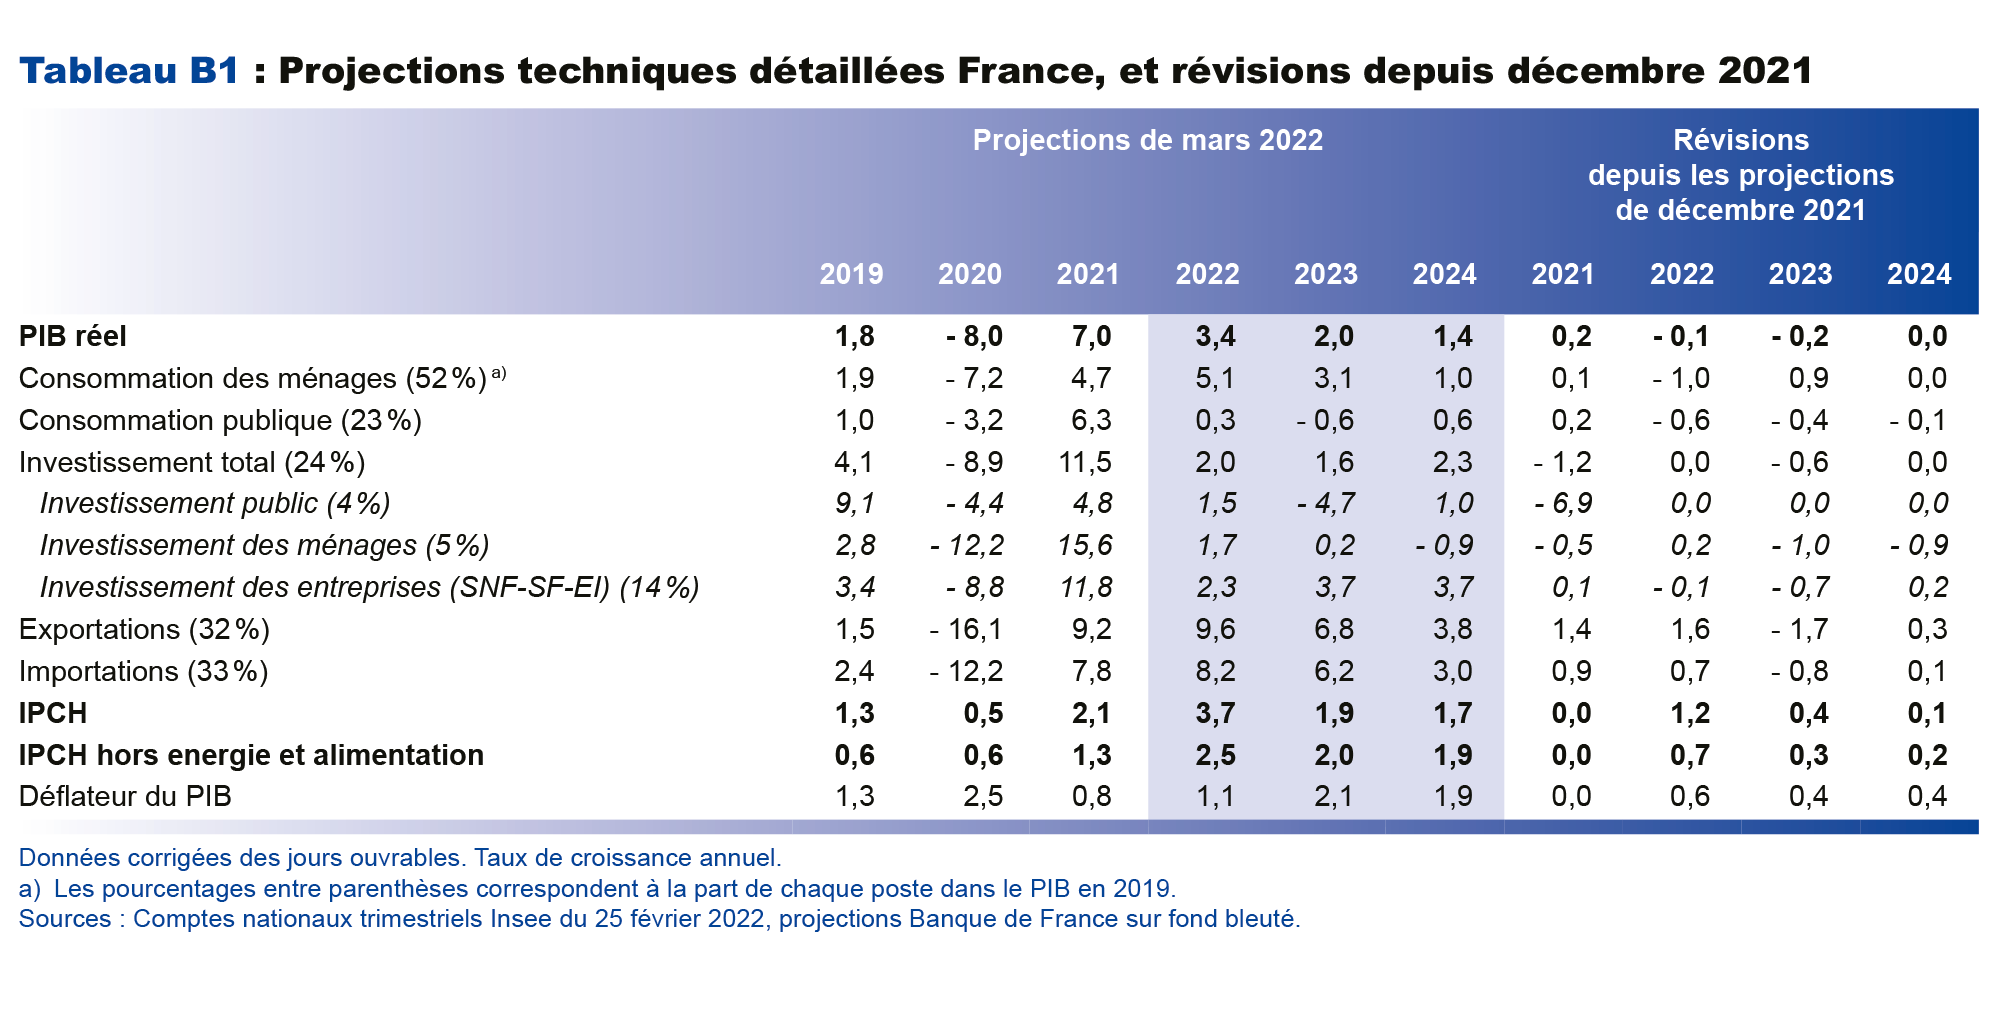 Projections techniques détaillées France, et révisions depuis décembre 2021